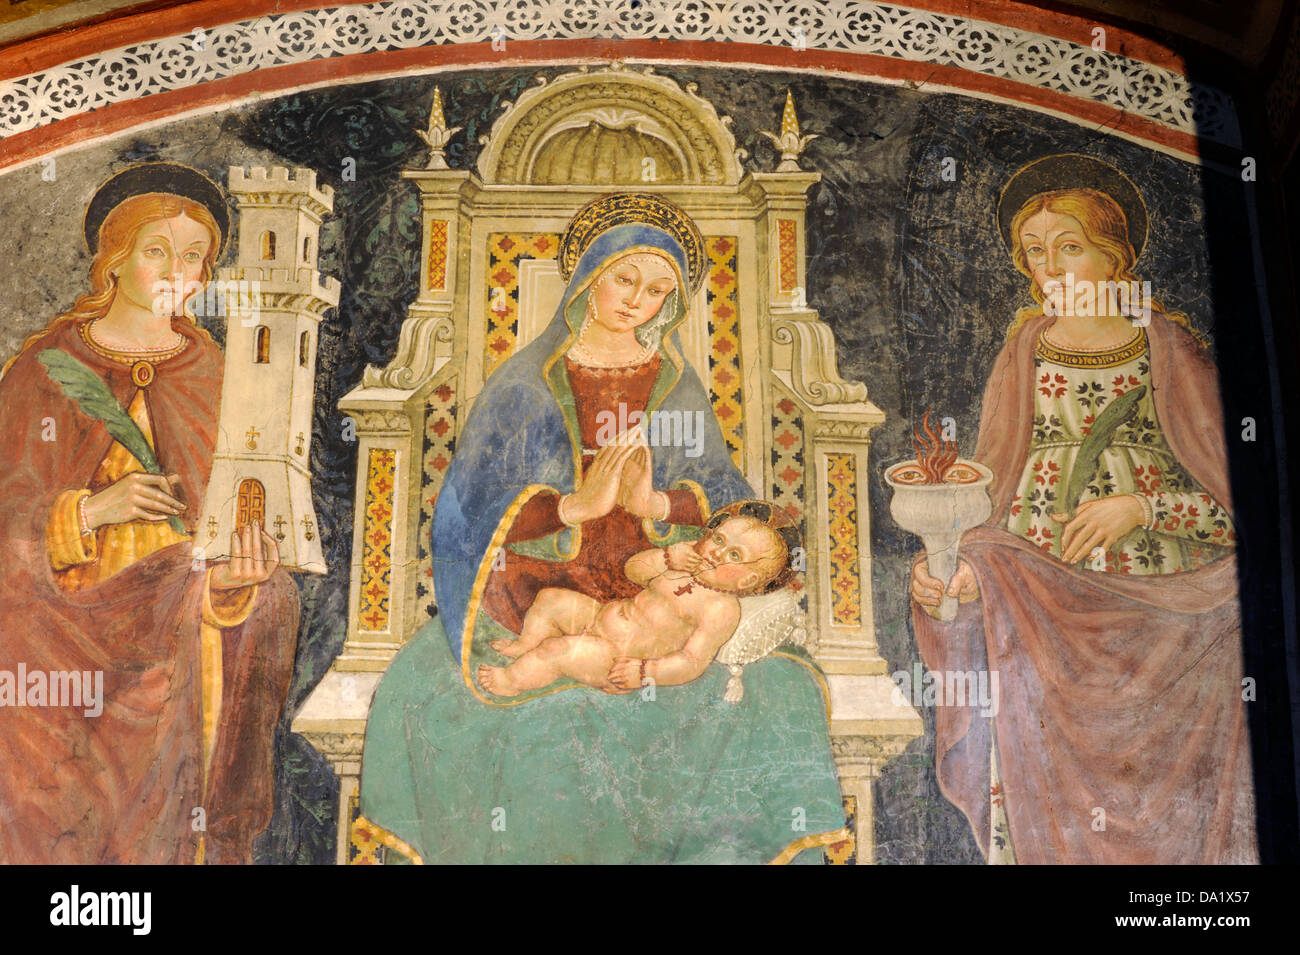 Italia, Toscana, Sovana, chiesa di Santa Maria maggiore, affresco della Madonna (1508 d.C.), pittura rinascimentale Foto Stock